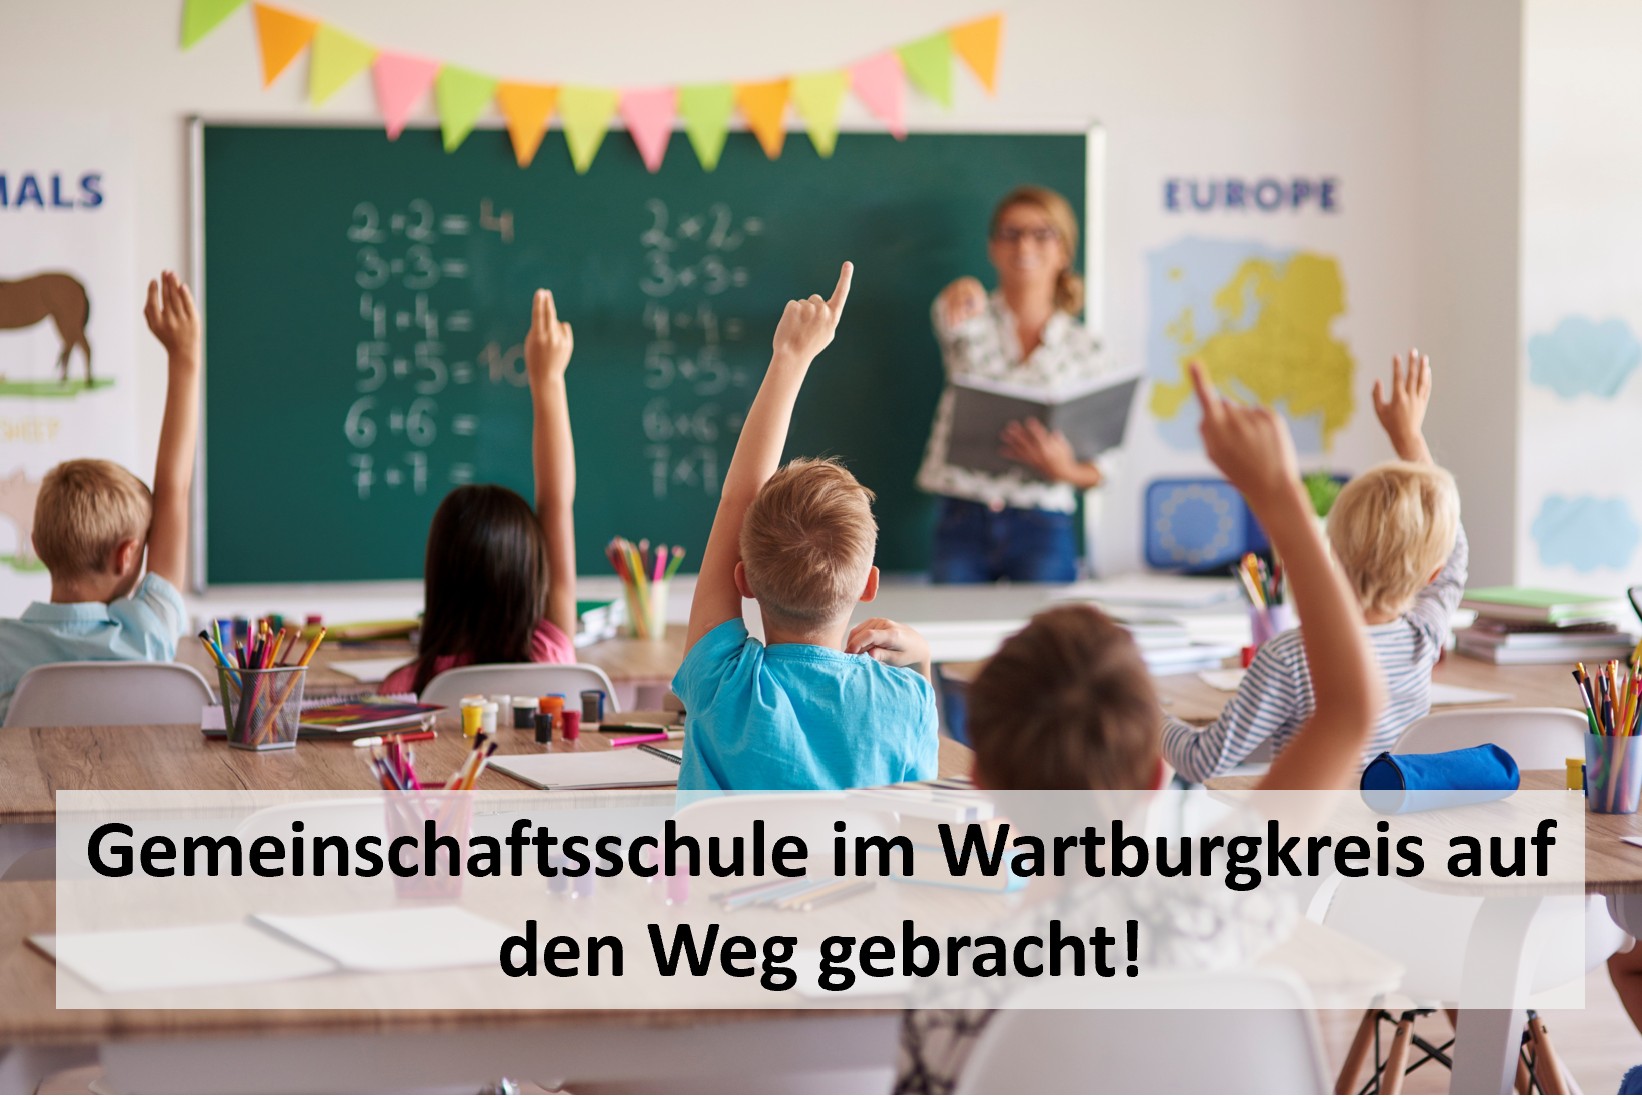 Historischer Schritt für die Schullandschaft des Wartburgkreises: Gemeinschaftsschule auf den Weg gebracht